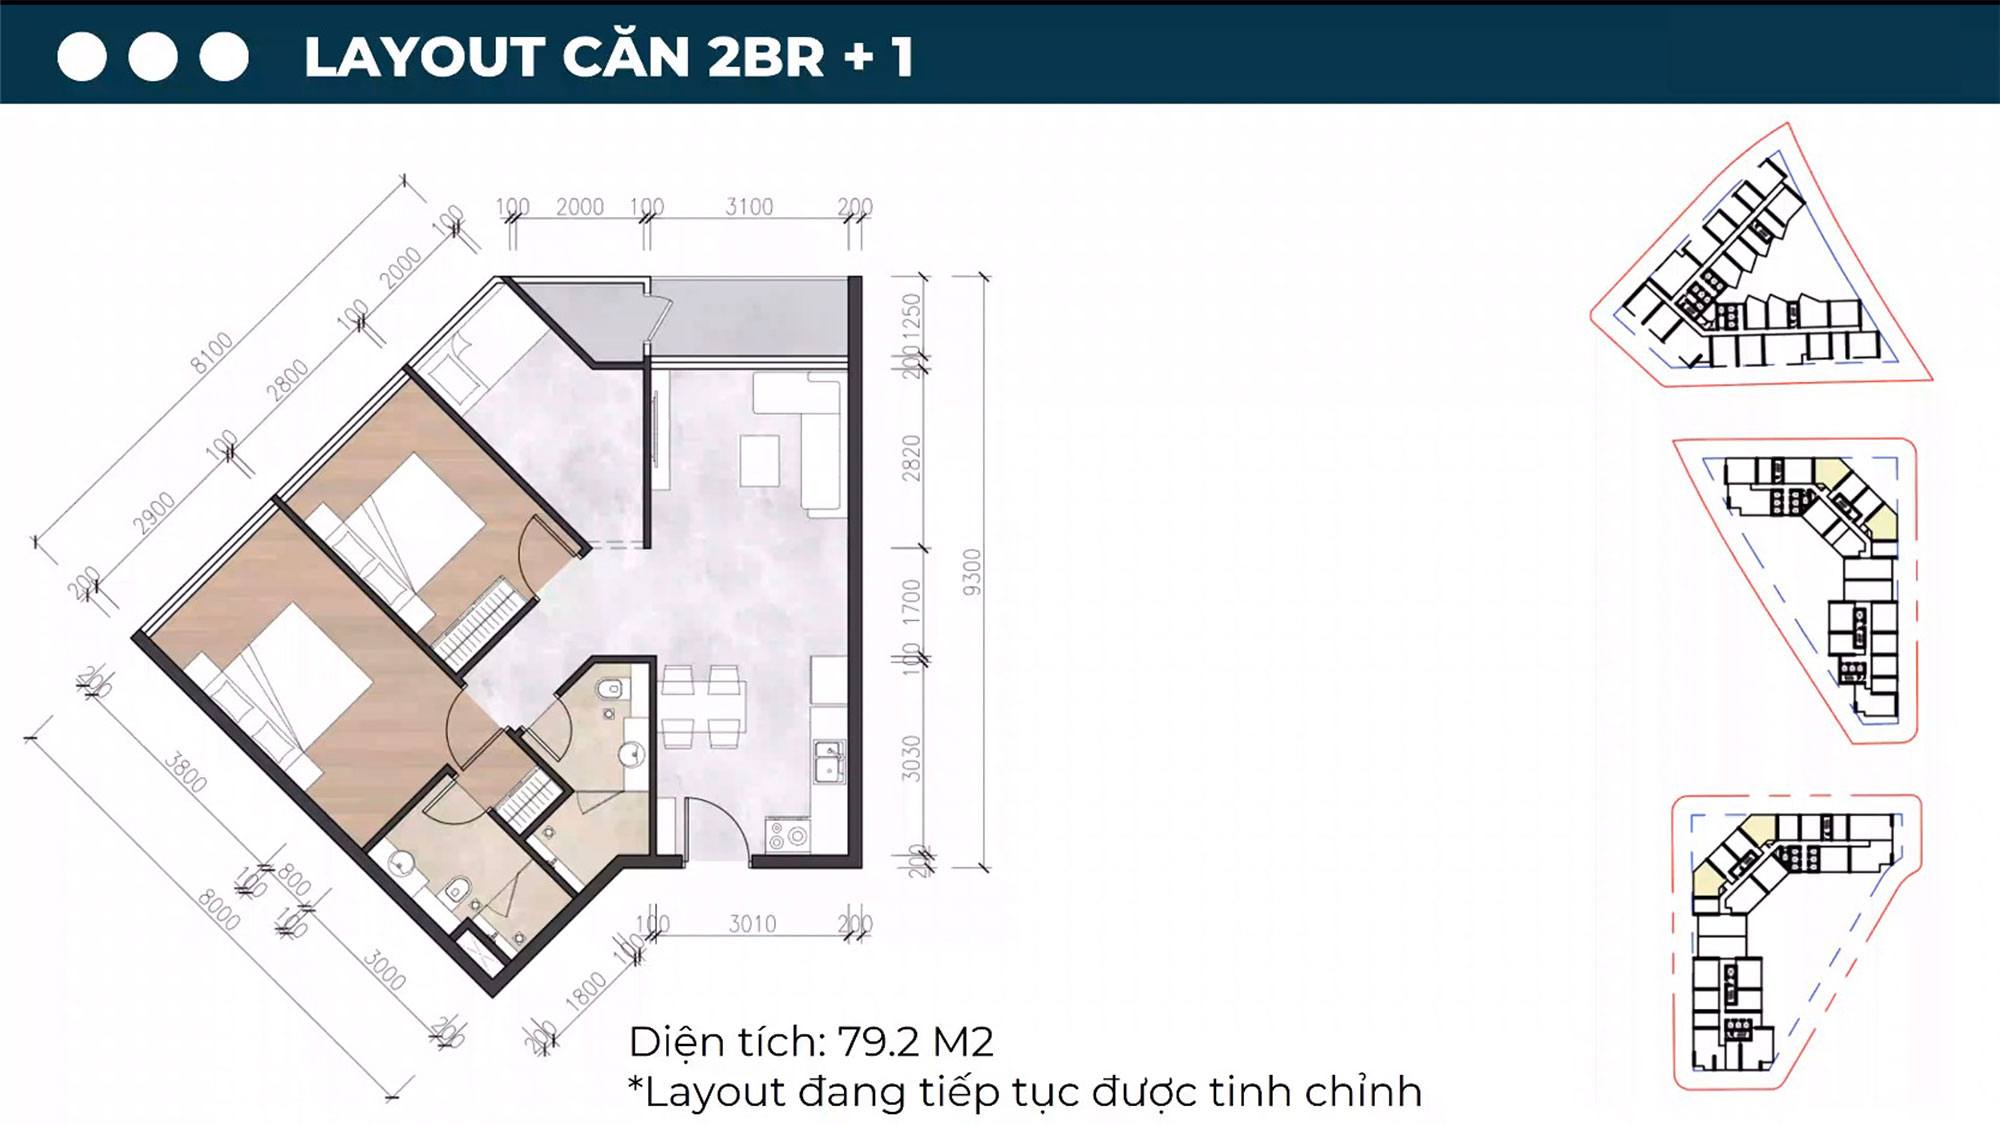 Layout thiết kế căn hộ 2PN+1, diện tích 79,2m2.